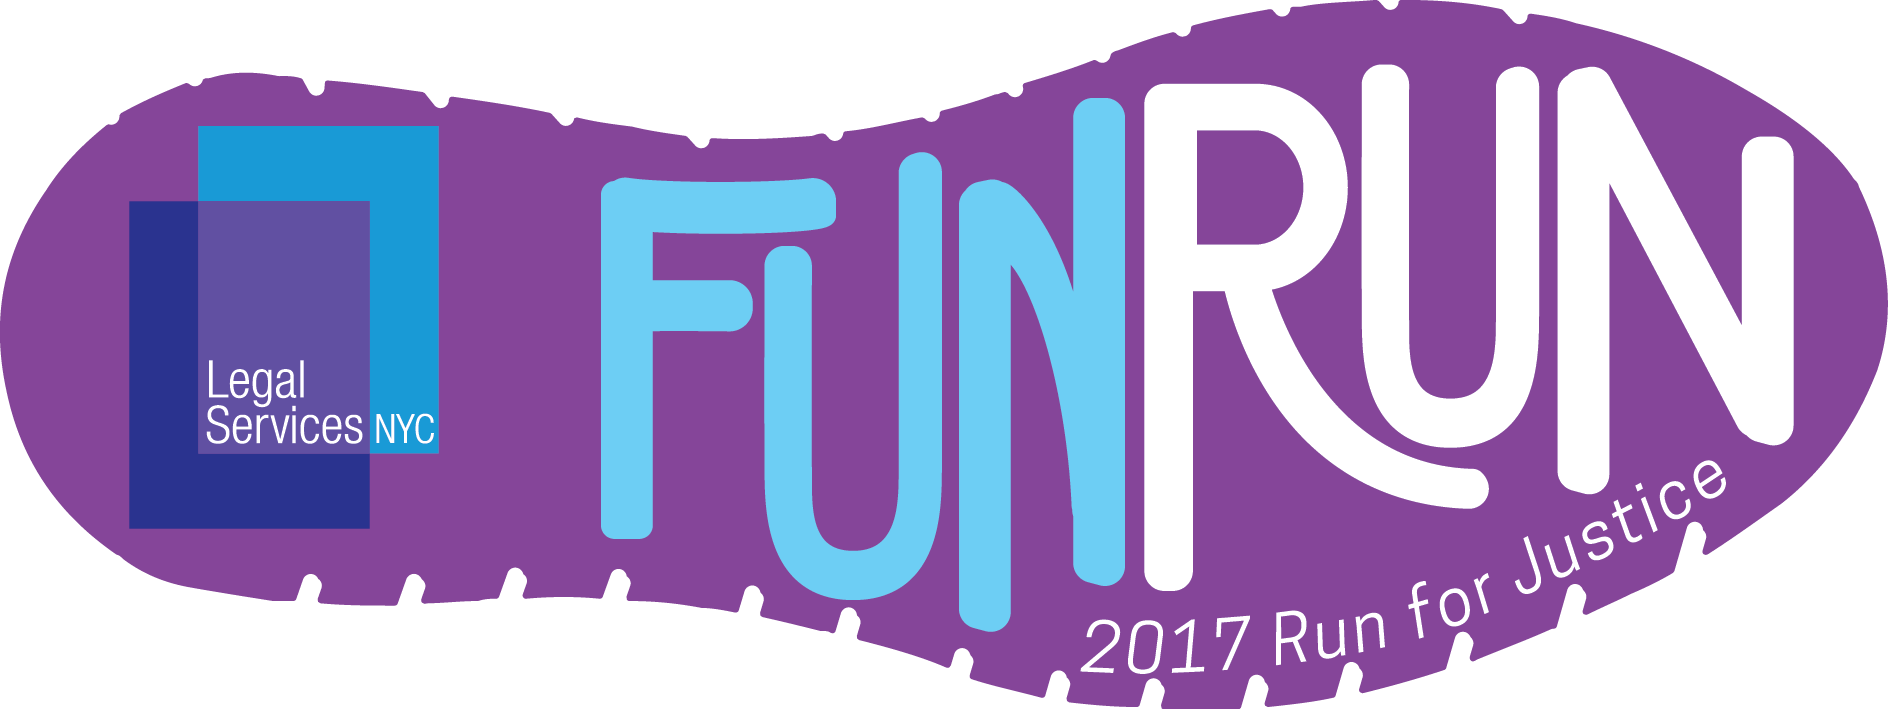 2017 Fun Run